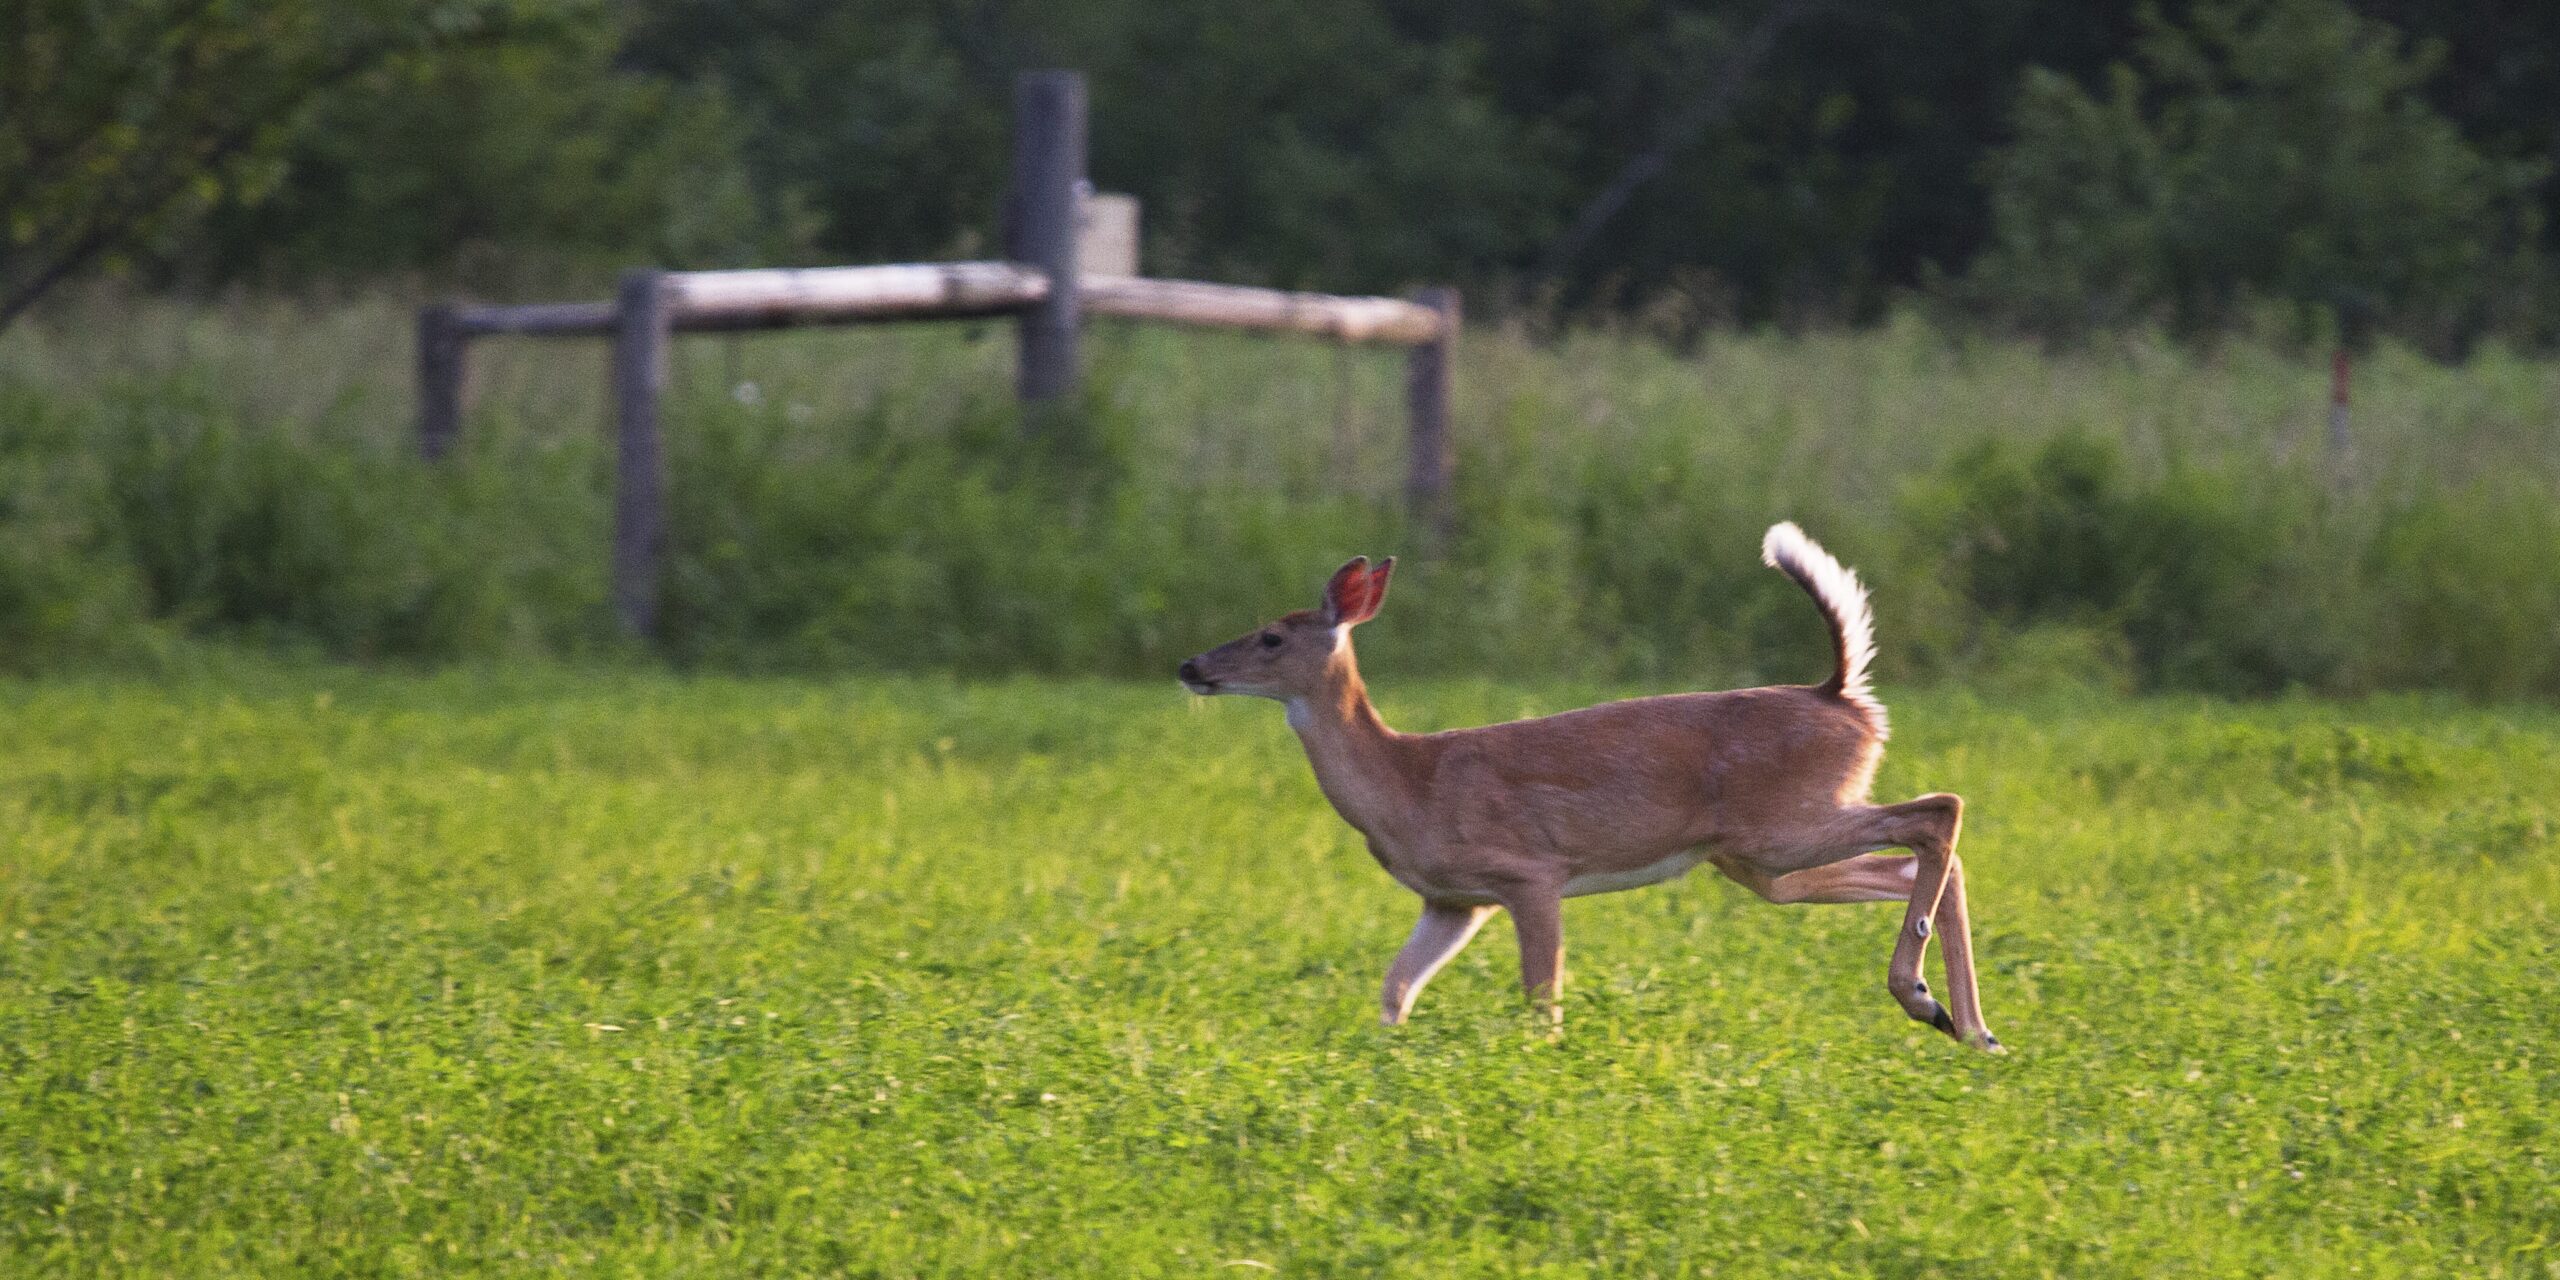 A deer runs through a field away from the camera.